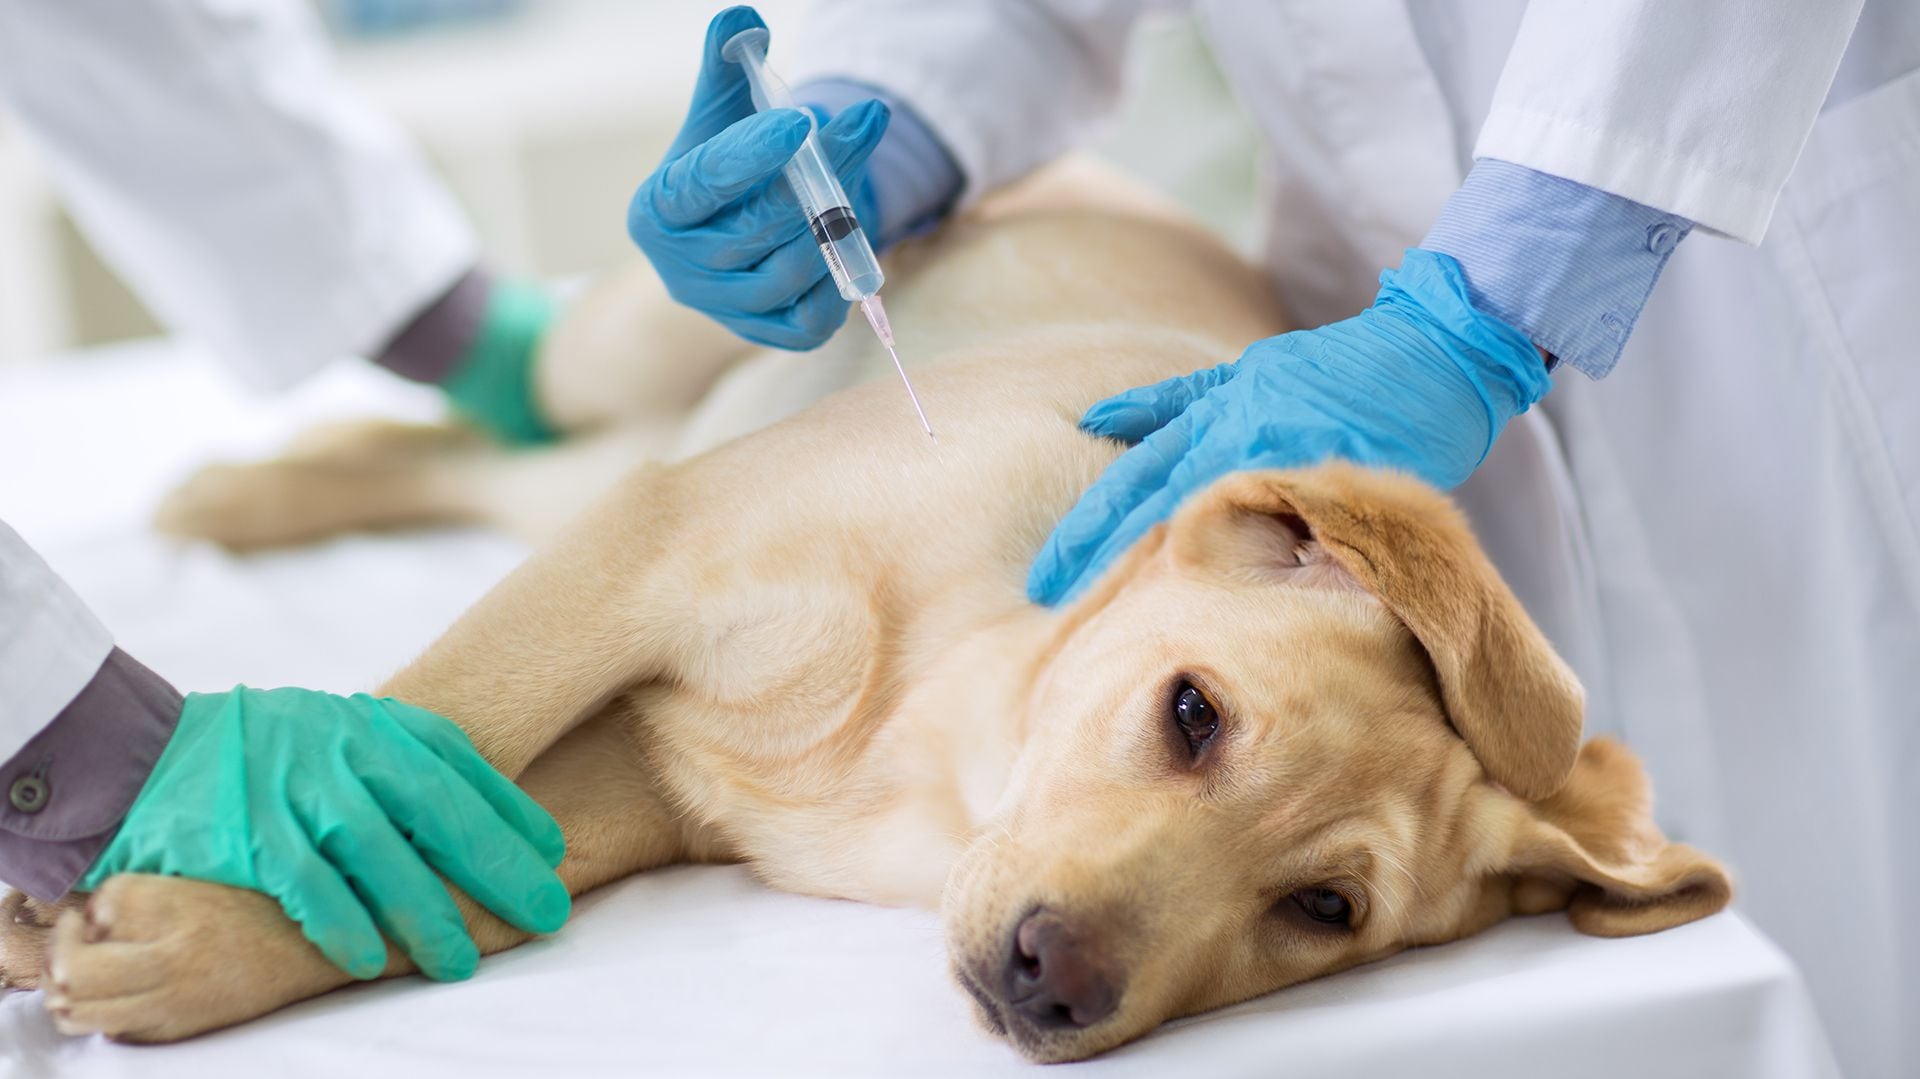 Al morder a una persona, un perro puede transmitir la rabia. Por eso, hay que vacunarlos como prevención de esa enfermedad (iStock)